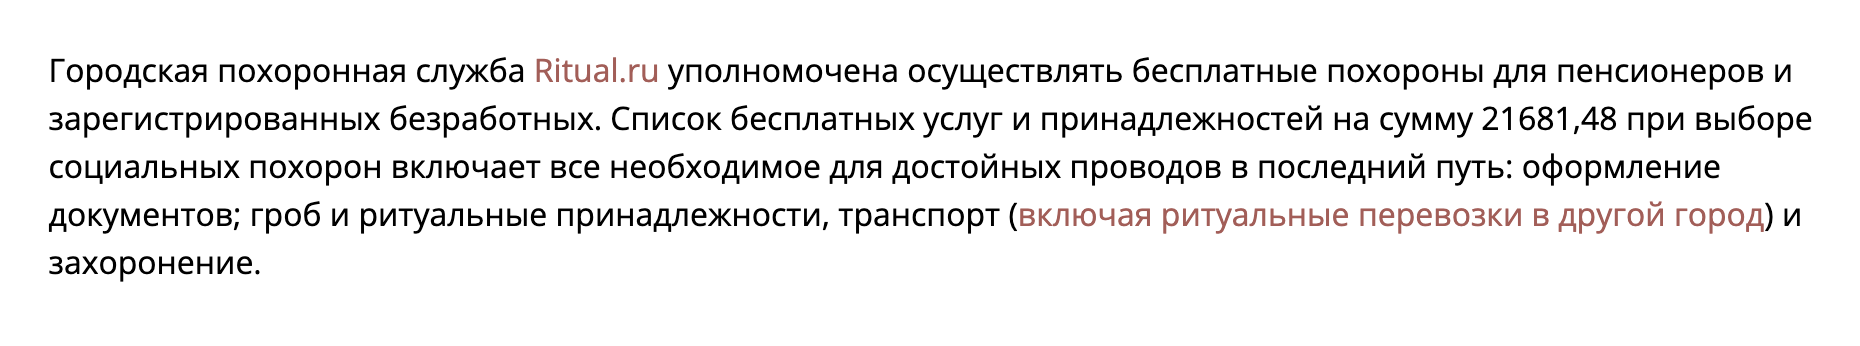 Московская городская ритуальная служба на сайте Ritual.ru сообщает, что бесплатно хоронит пенсионеров и безработных. В Москве установлены доплаты на погребение при их смерти